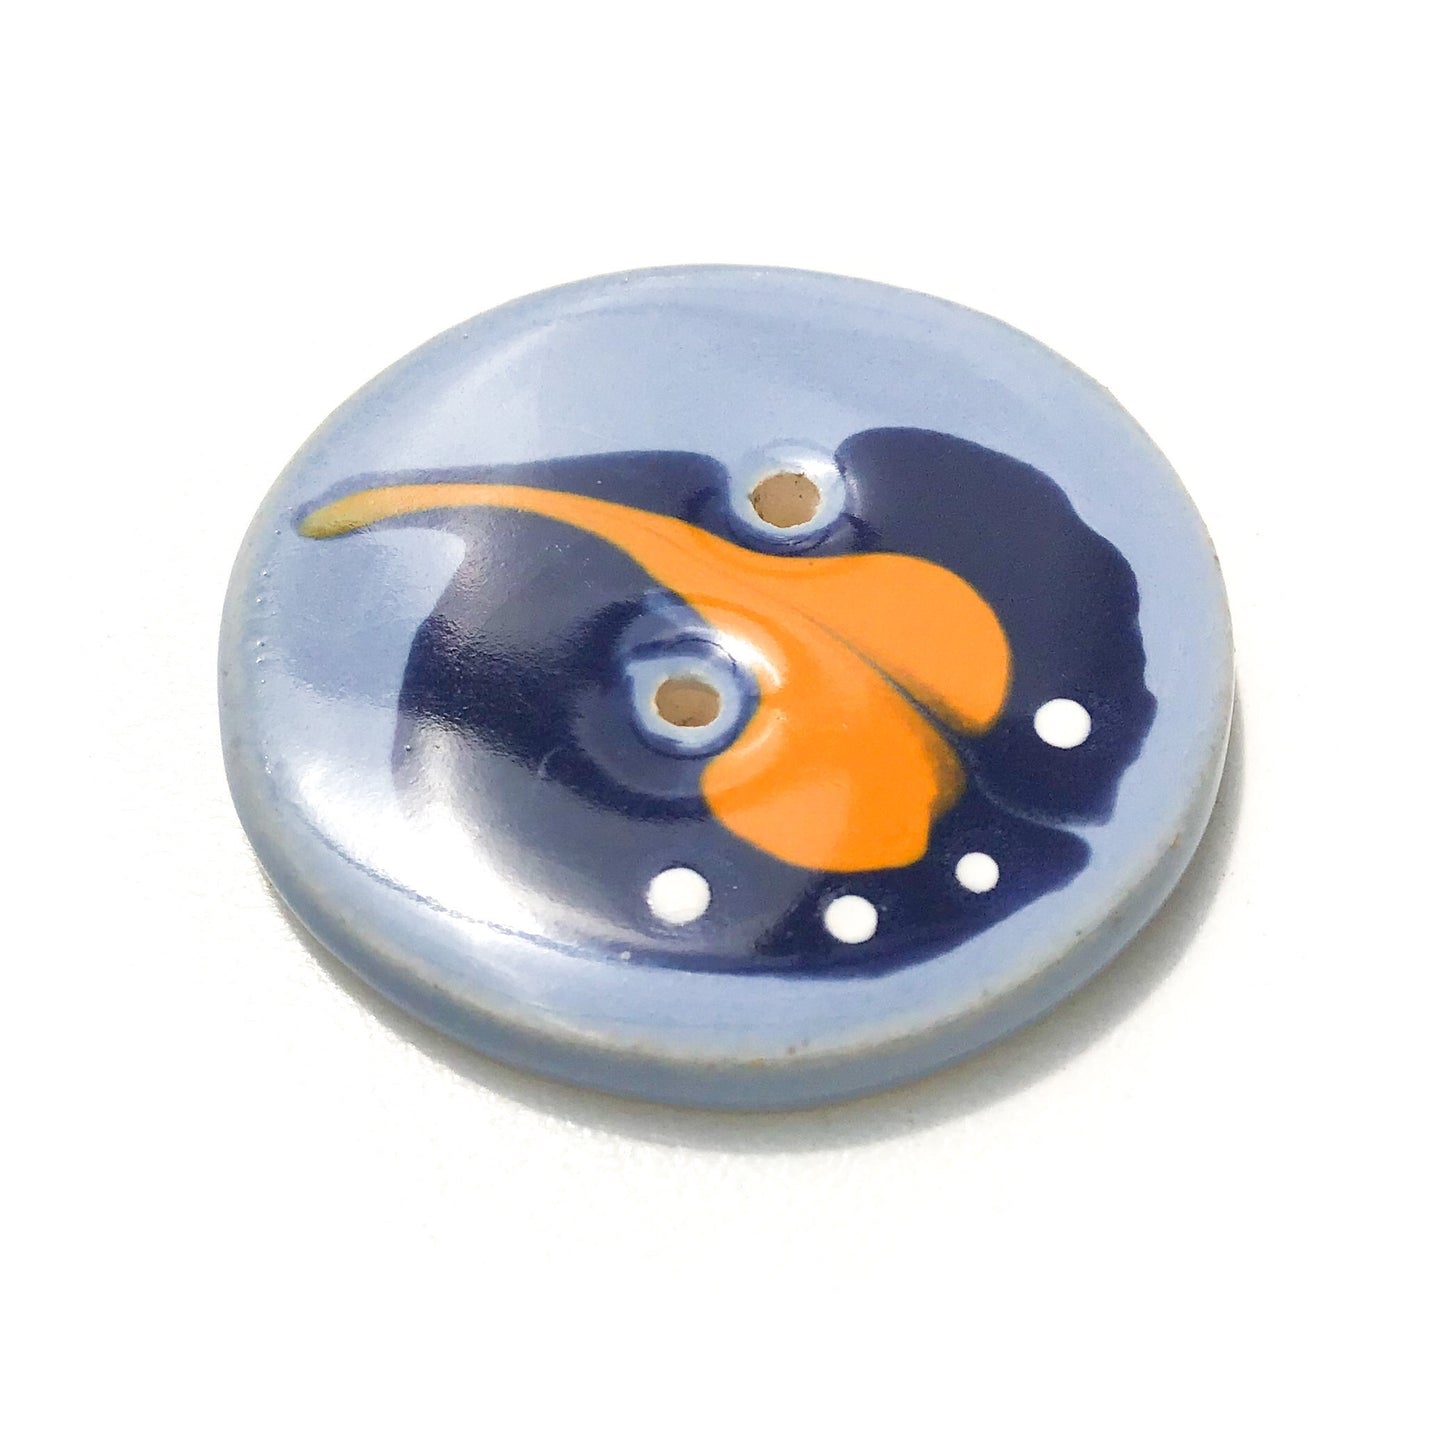 Blue & Orange 'Paisley' Button - Large Ceramic Button - 1 7/16"